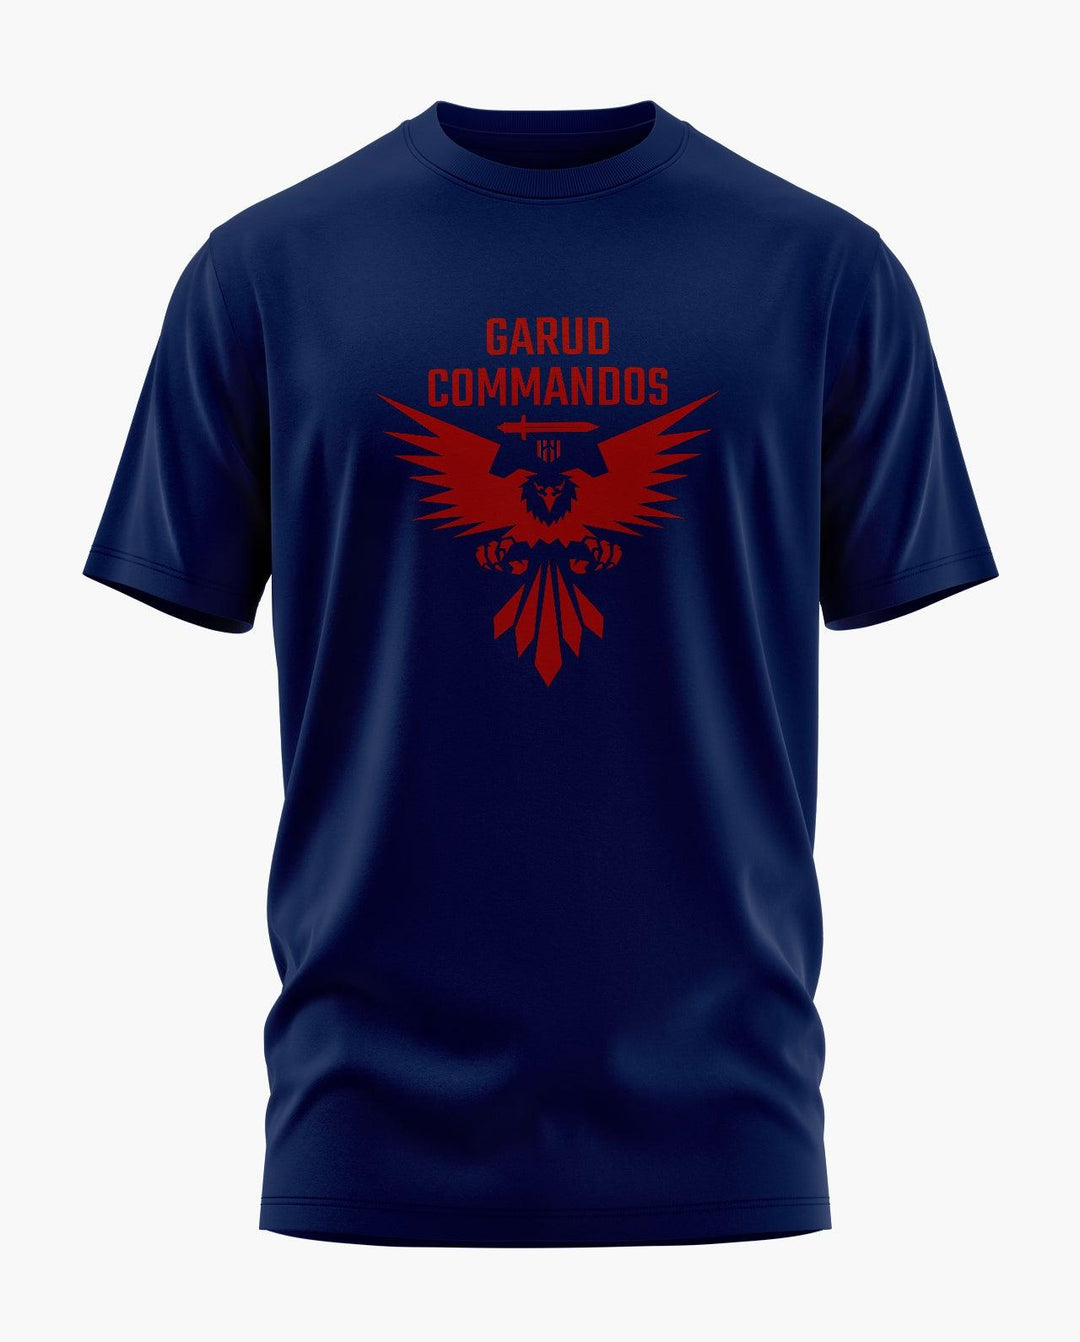 THE GARUD COMMANDOS T-Shirt - Aero Armour